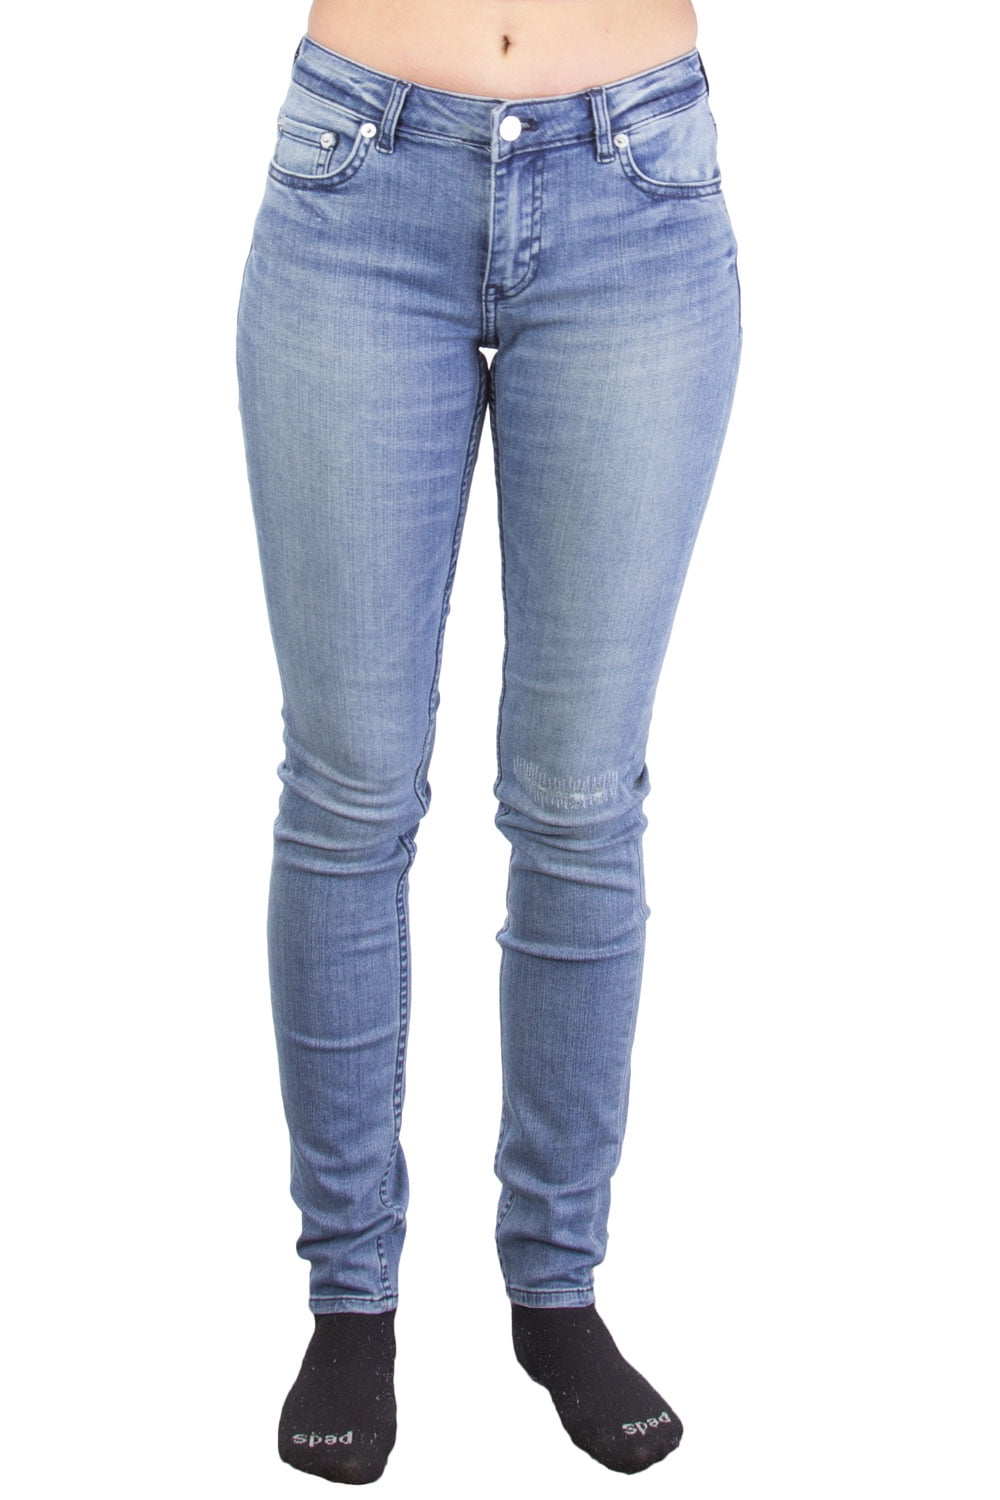 BLK DNM - BLK DNM Women's Slim Fit Jeans, Hamilton Blue, 28x32 ...